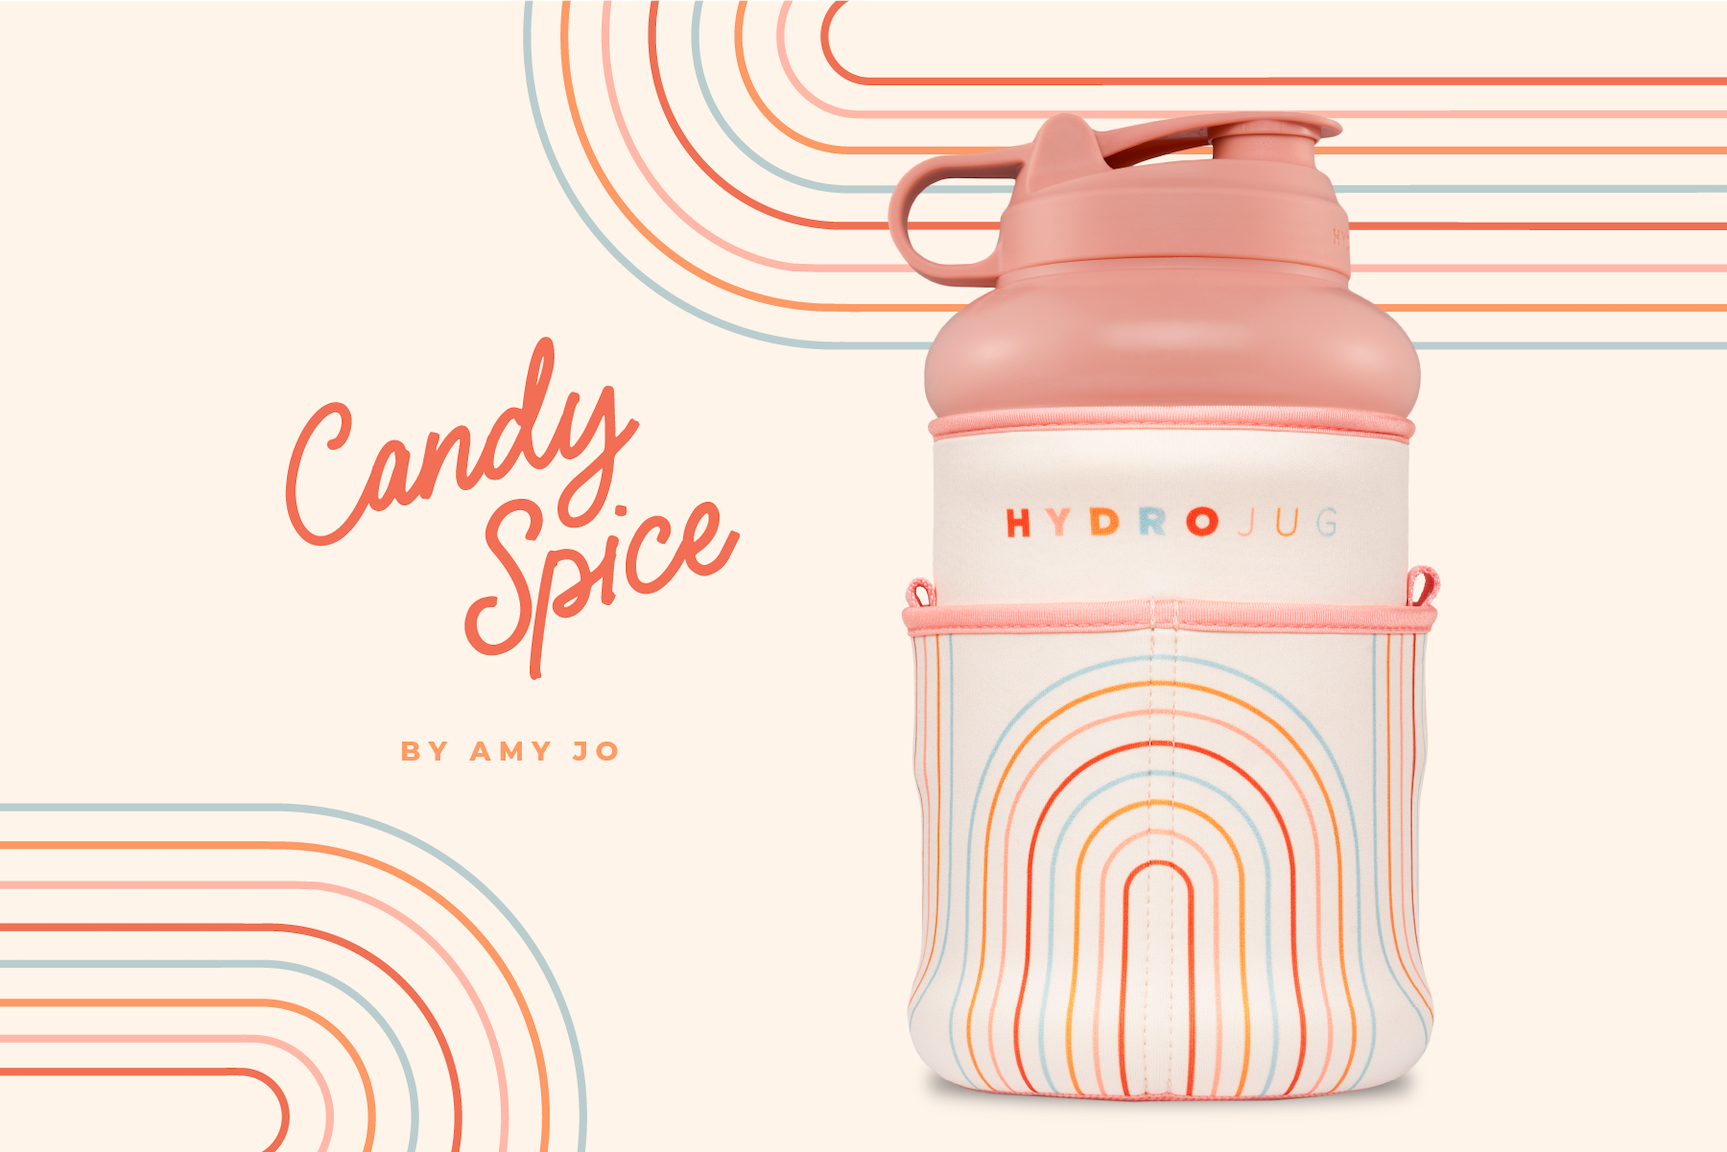 Candy Spice by Amy Jo